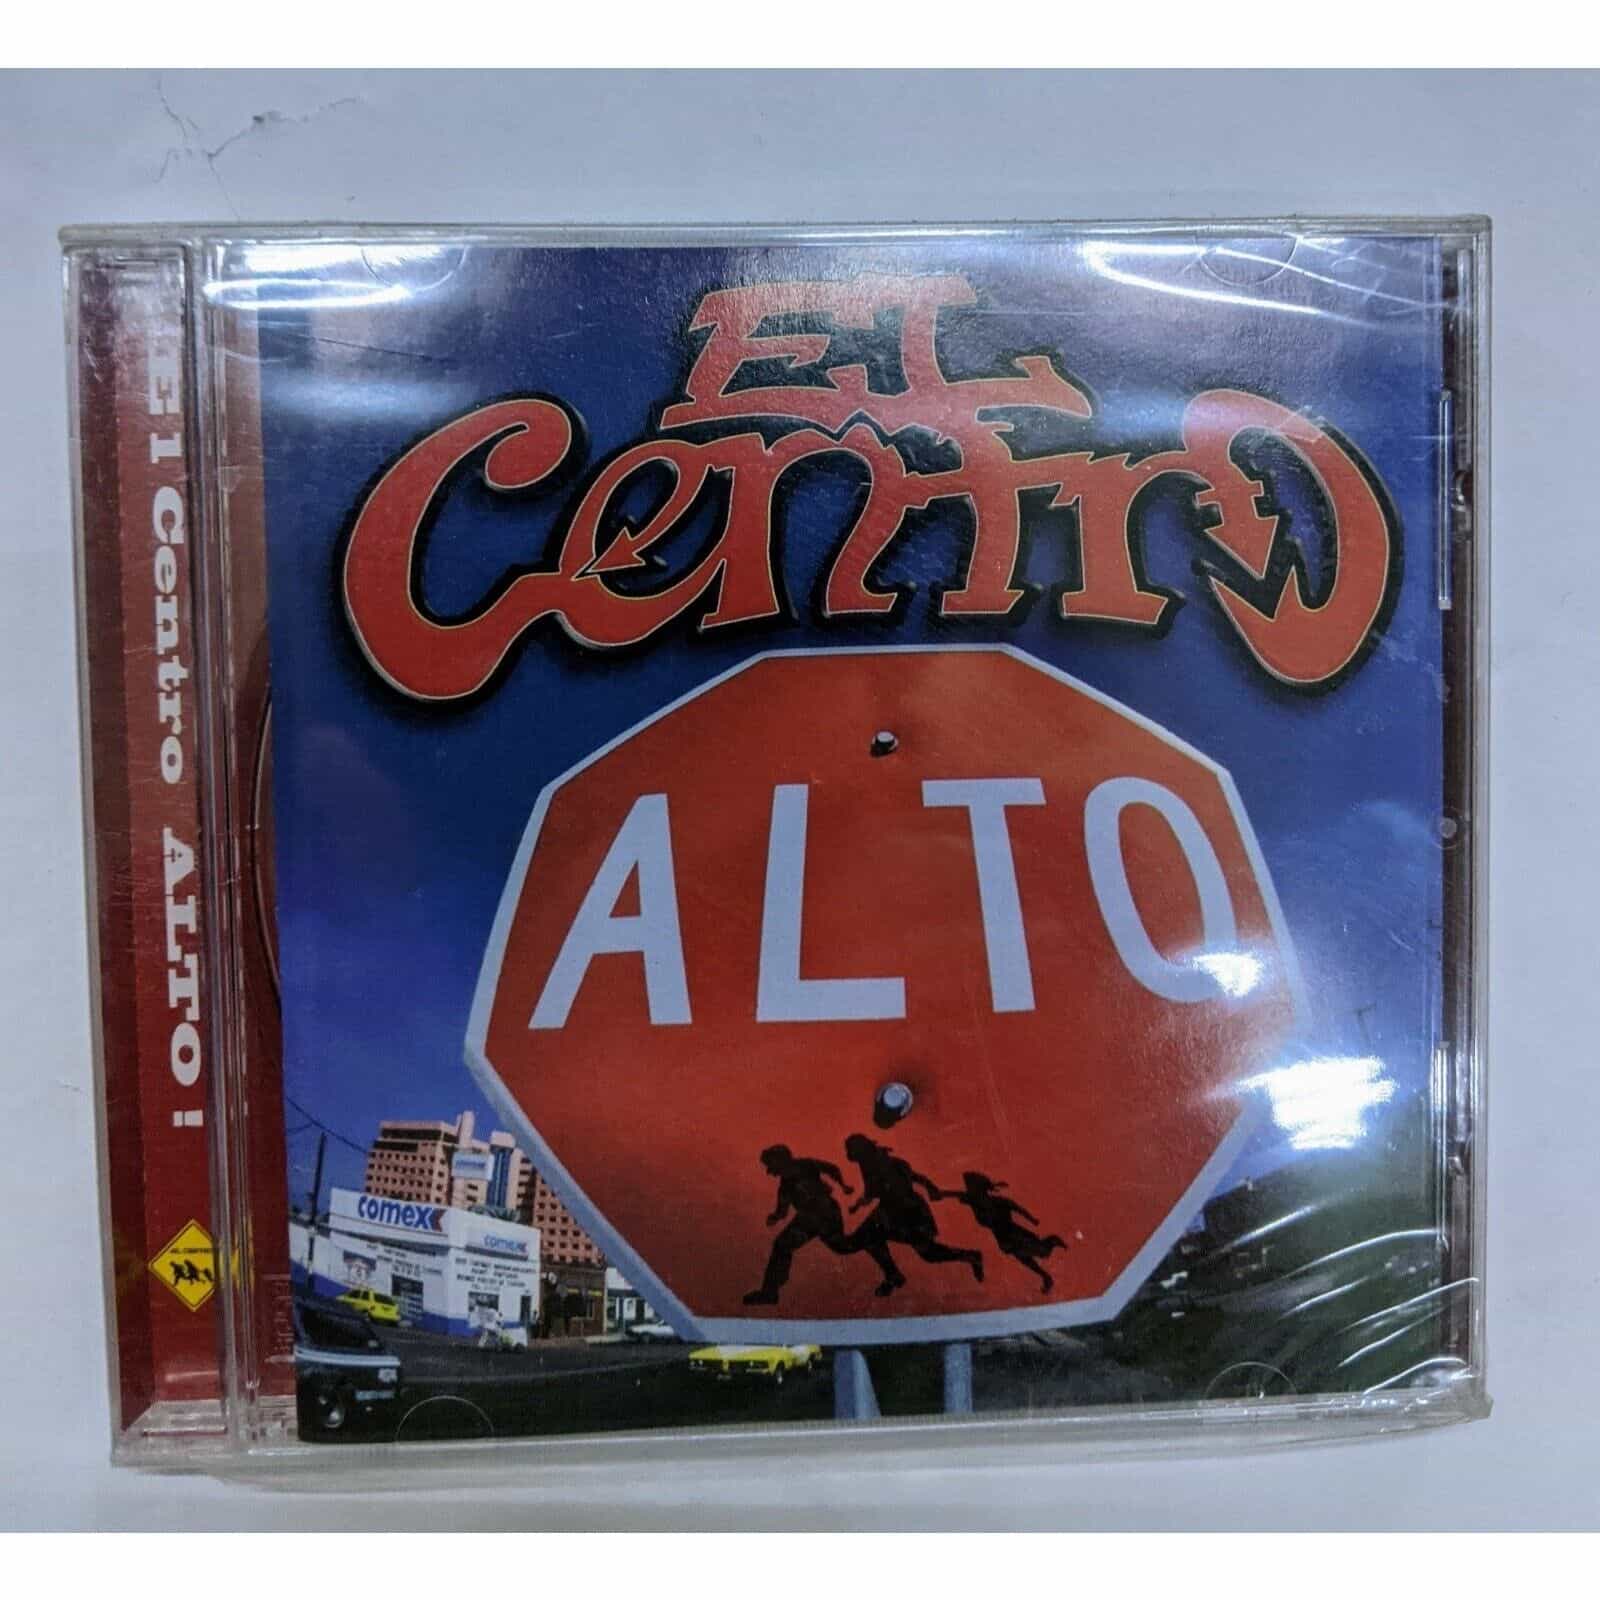 Alto by El Centro Music Album CD